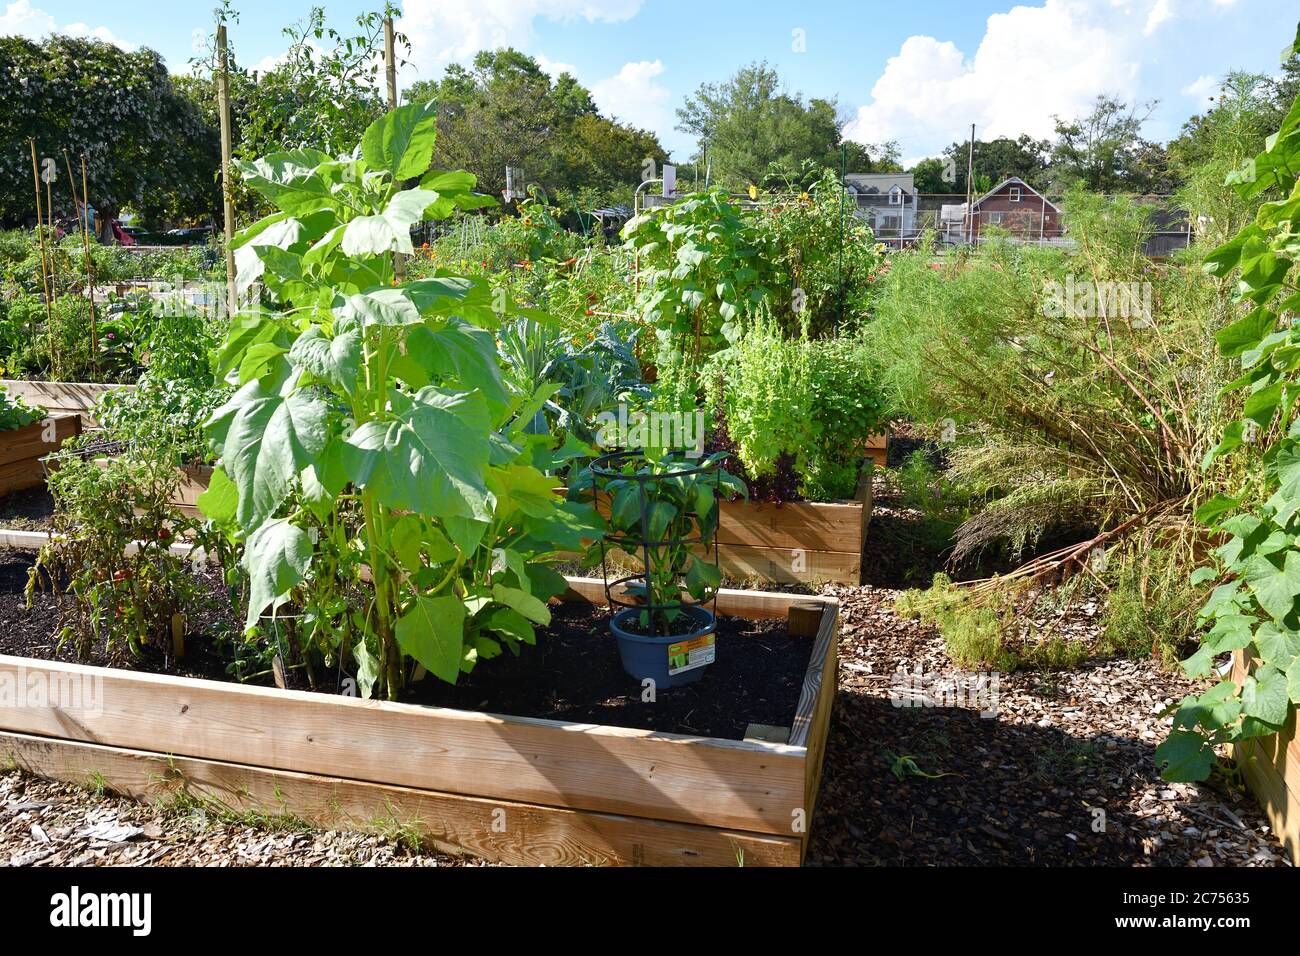 Urban Rain Garden Farm individuali trame in box di Kale, pomodori, Peperoni, banane, girasoli, decorazioni e piante assortite mantenute dai proprietari Foto Stock